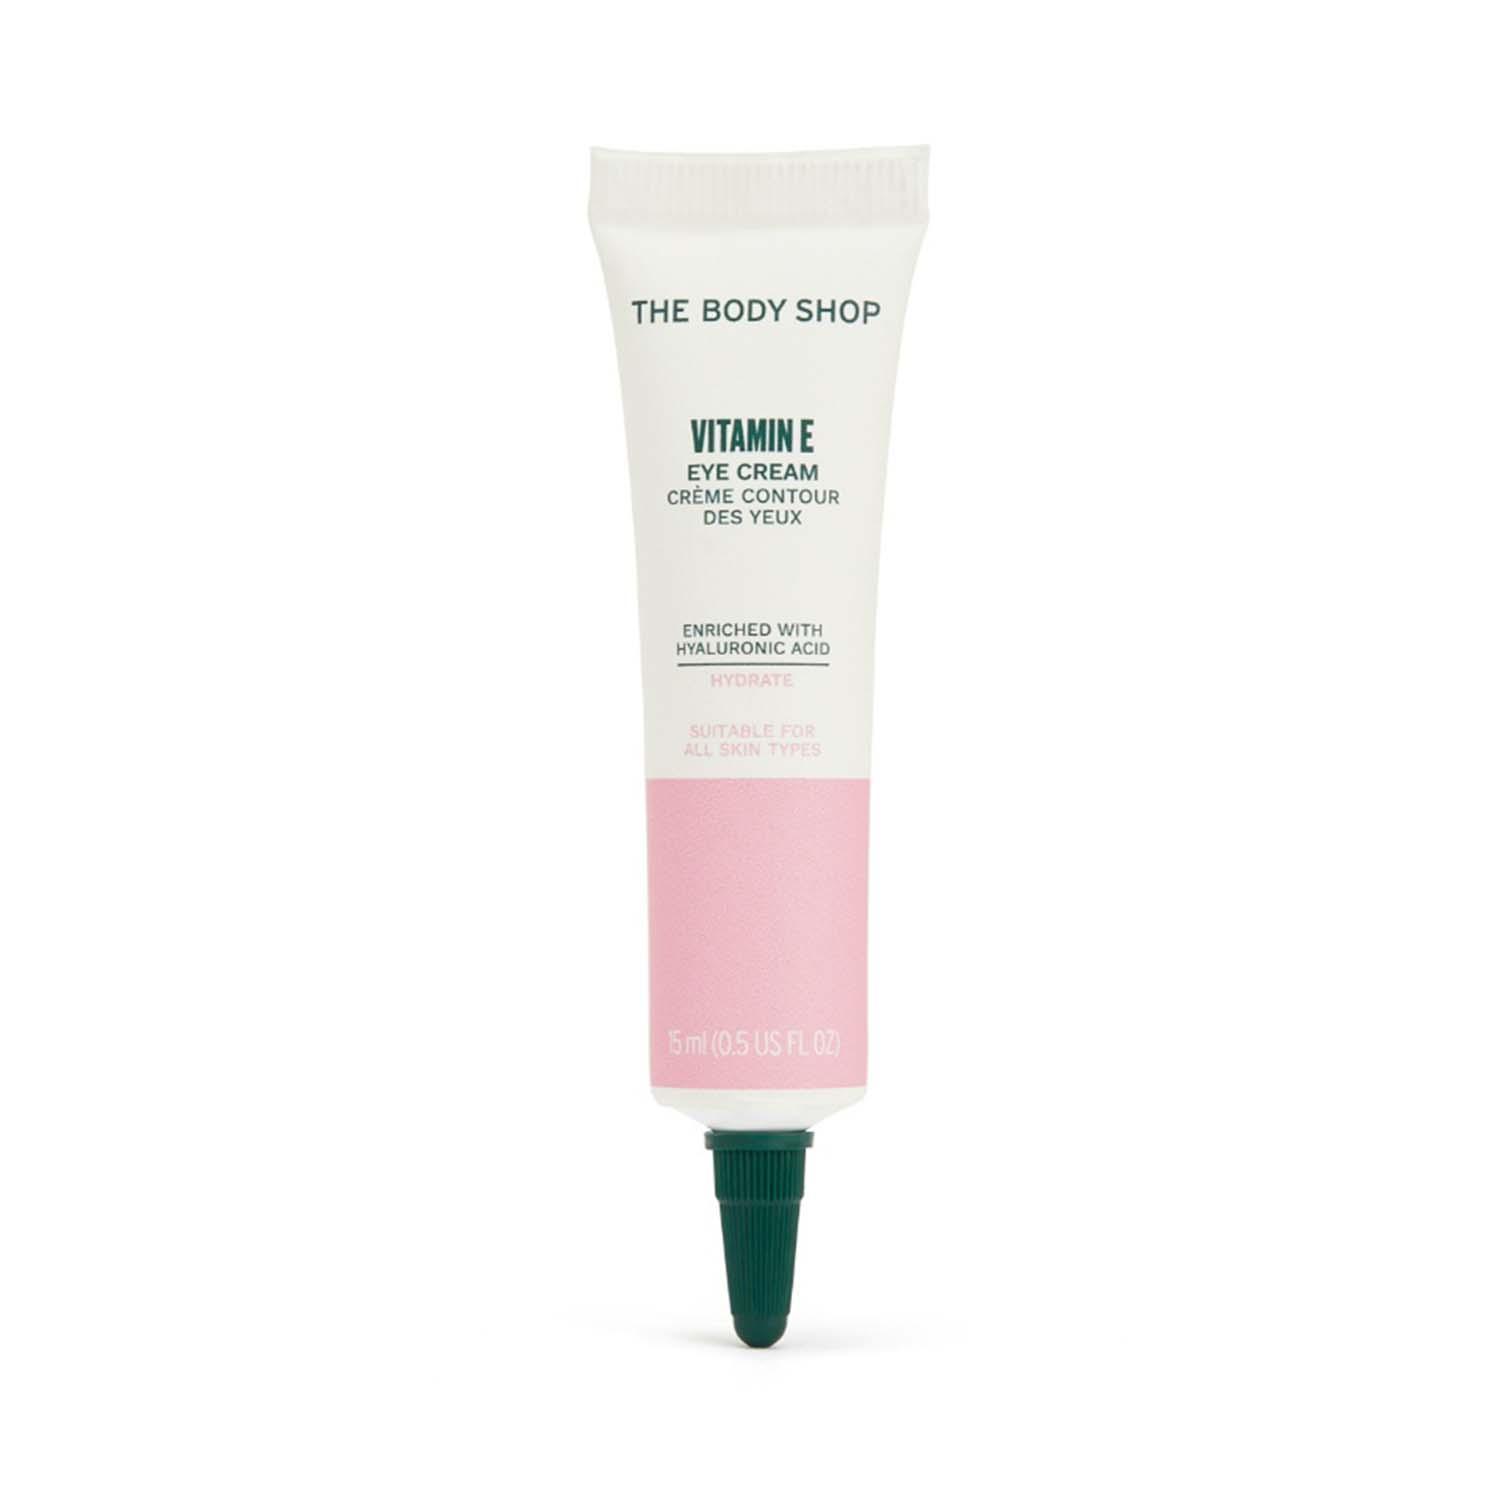 The Body Shop | The Body Shop Vitamin E Eye Cream (15ml)